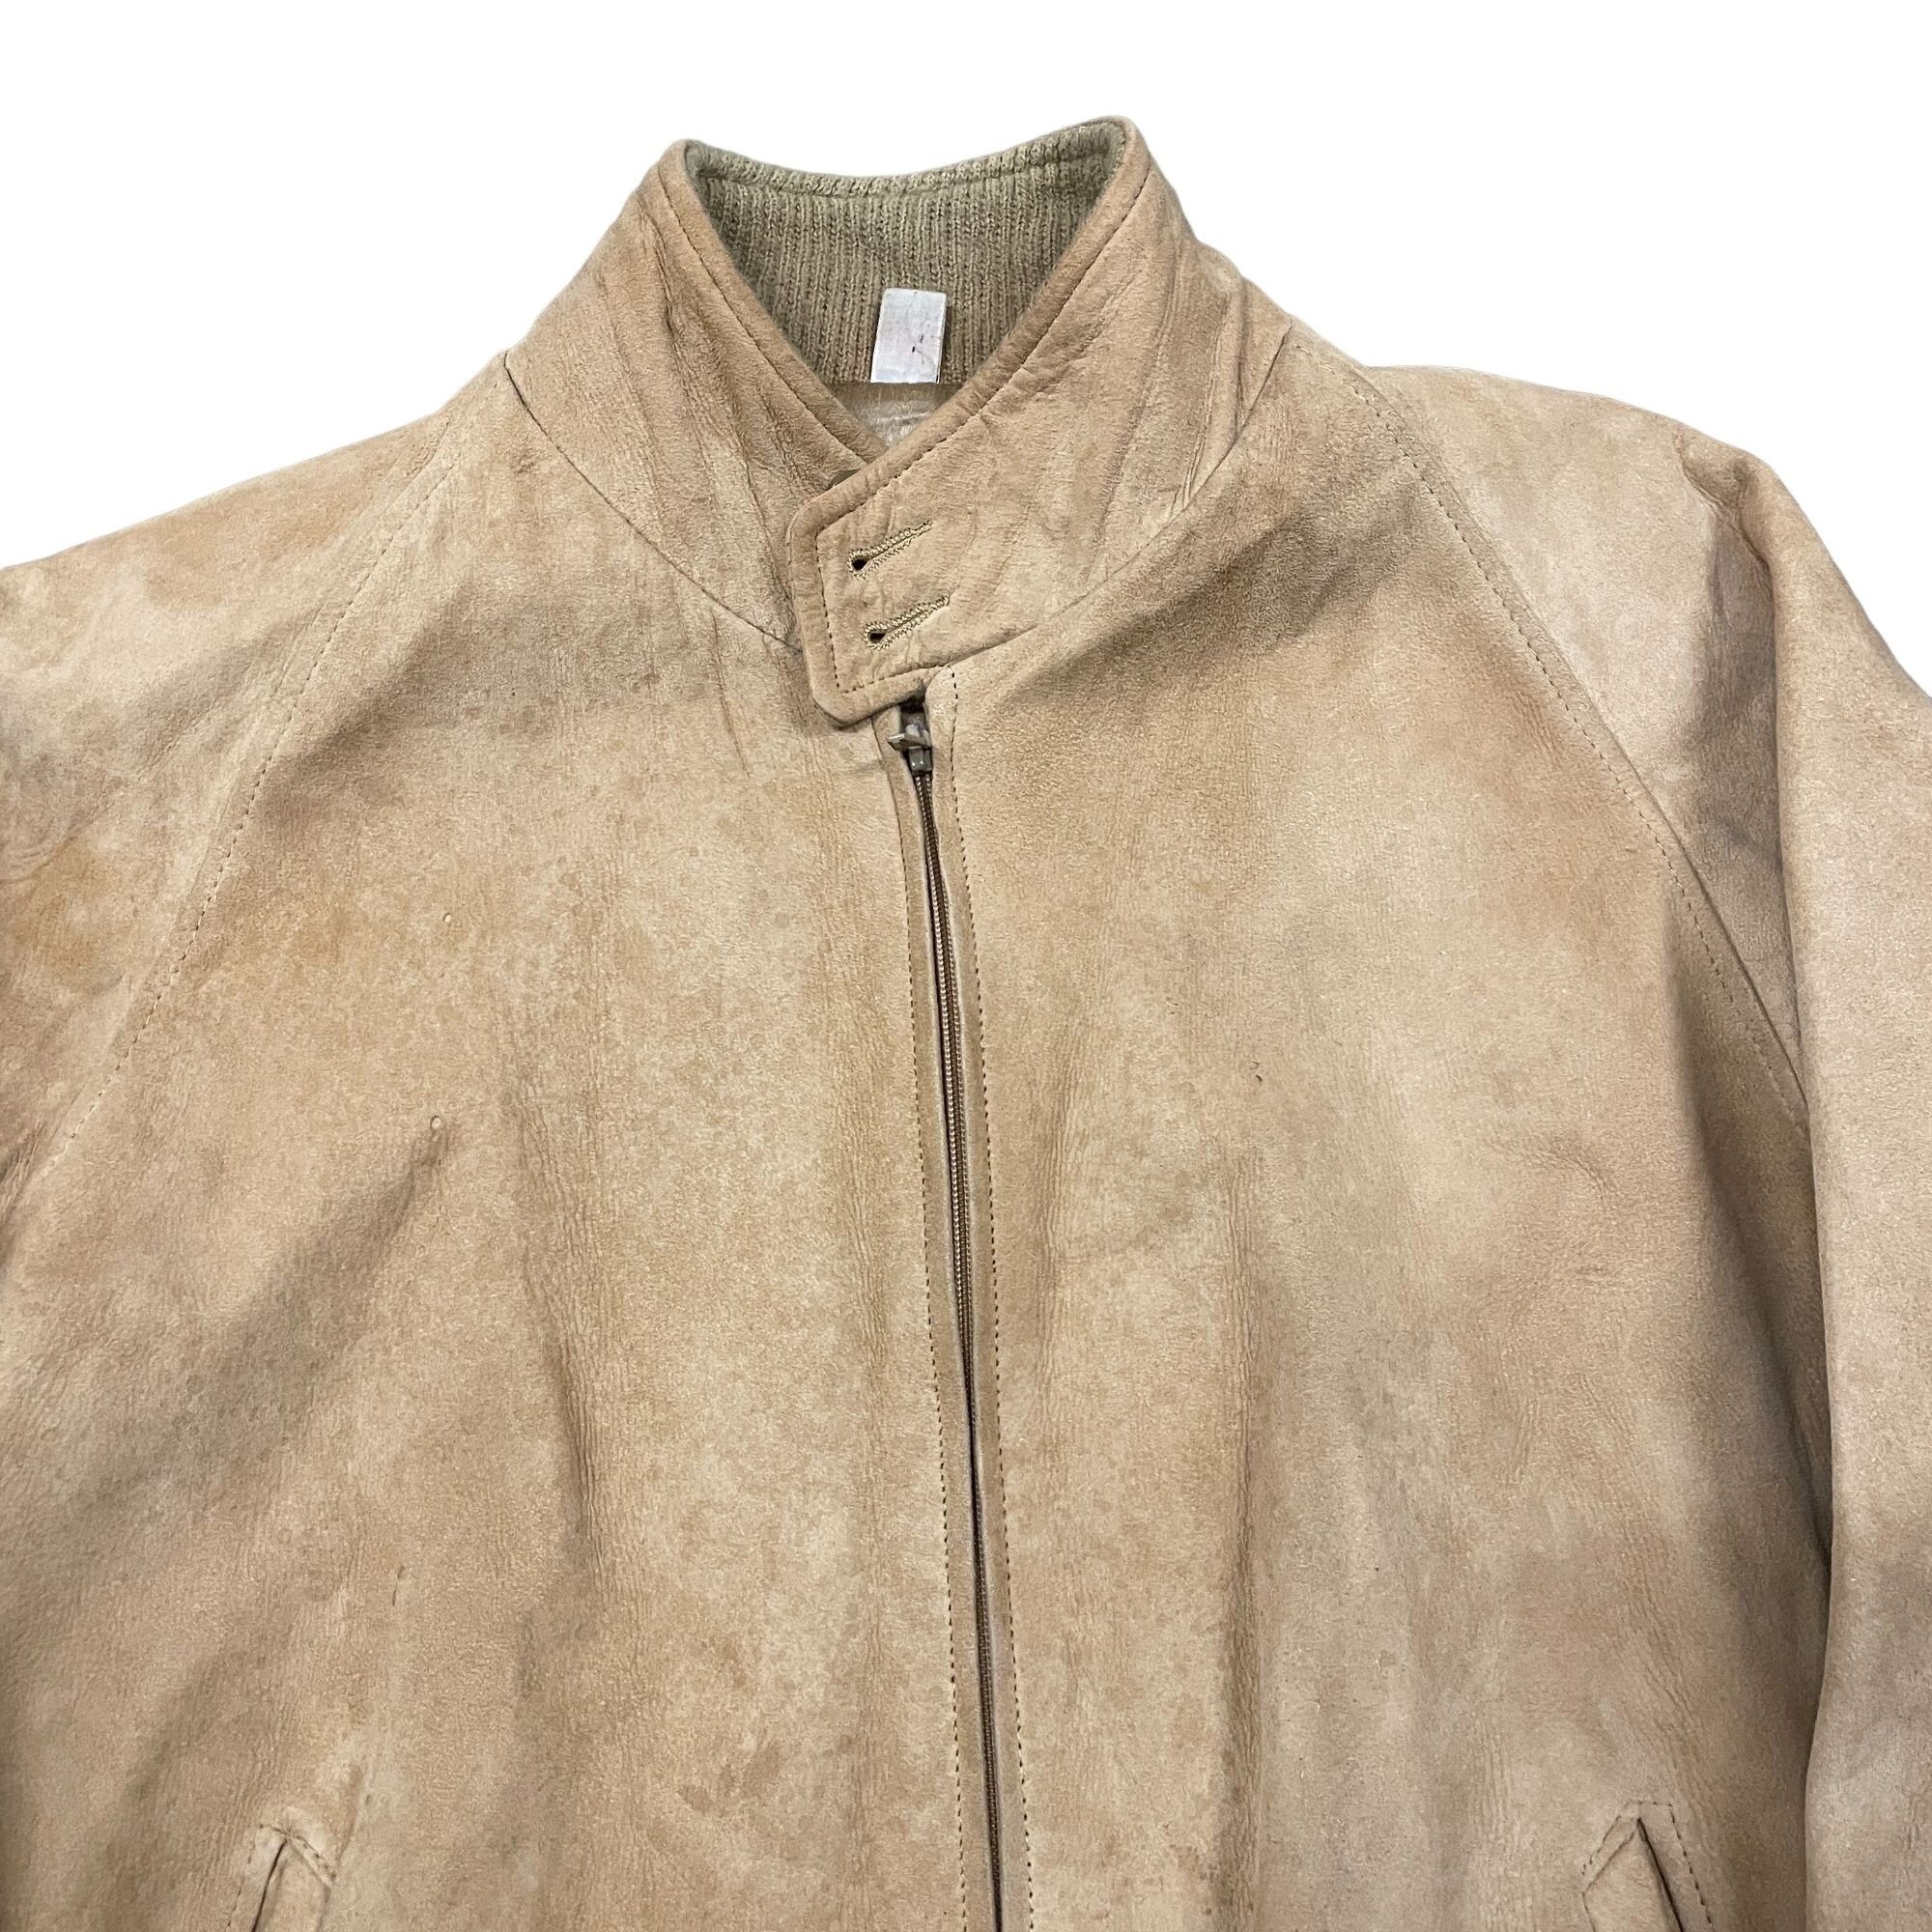 Vintage 70s/80s Vtg Broadmoor Mens Shop Beige Suede Zip Up Leather J Size US L / EU 52-54 / 3 - 3 Thumbnail